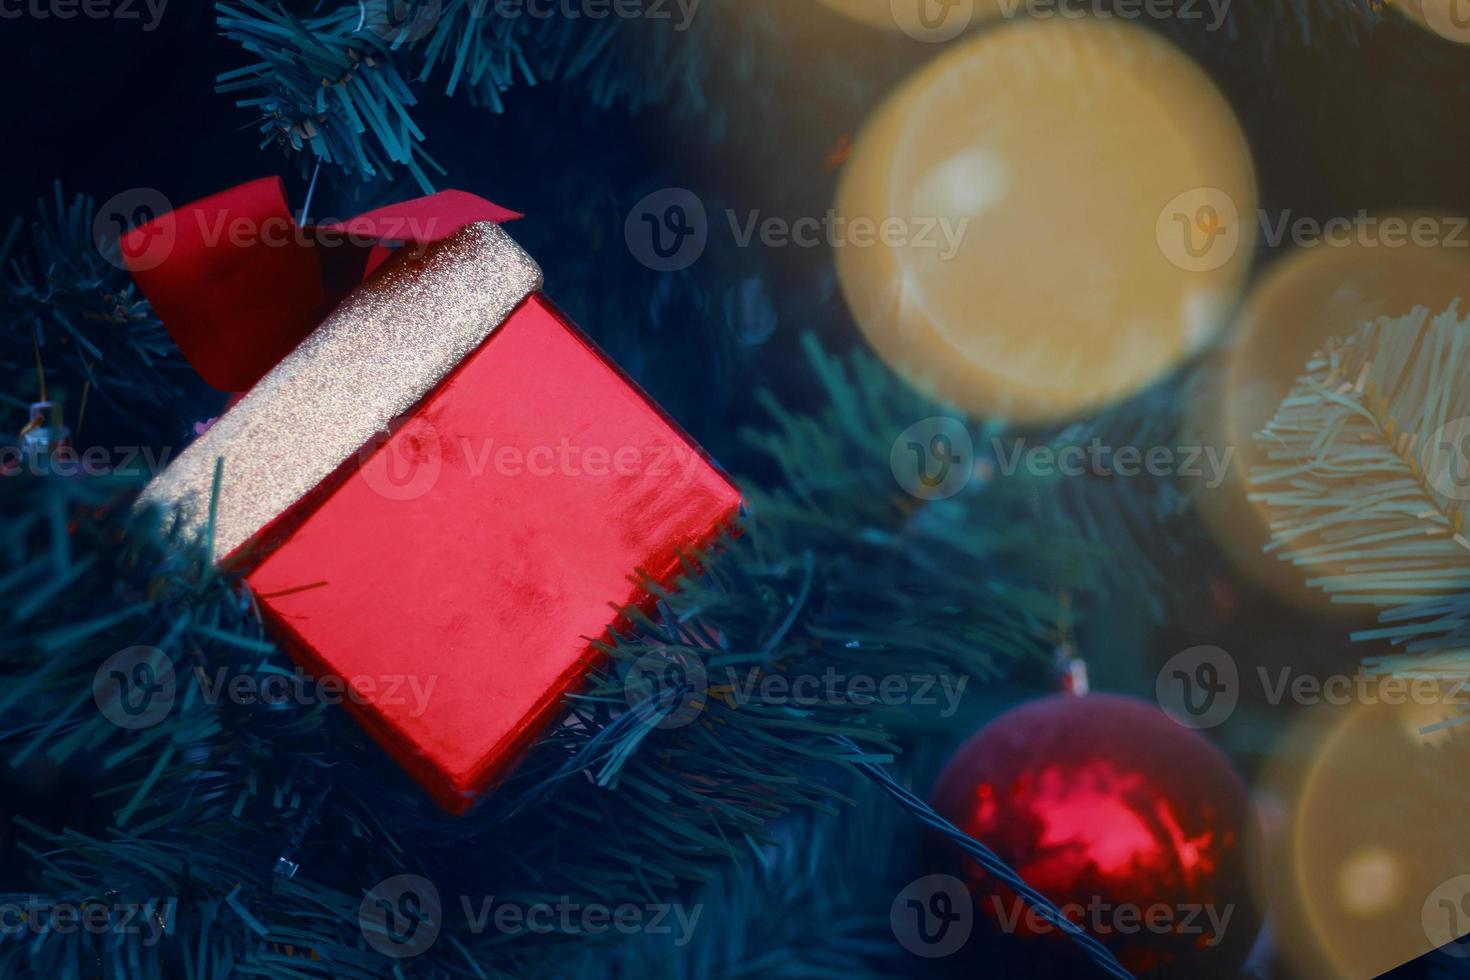 kerstboom met versieringen en geschenken. foto